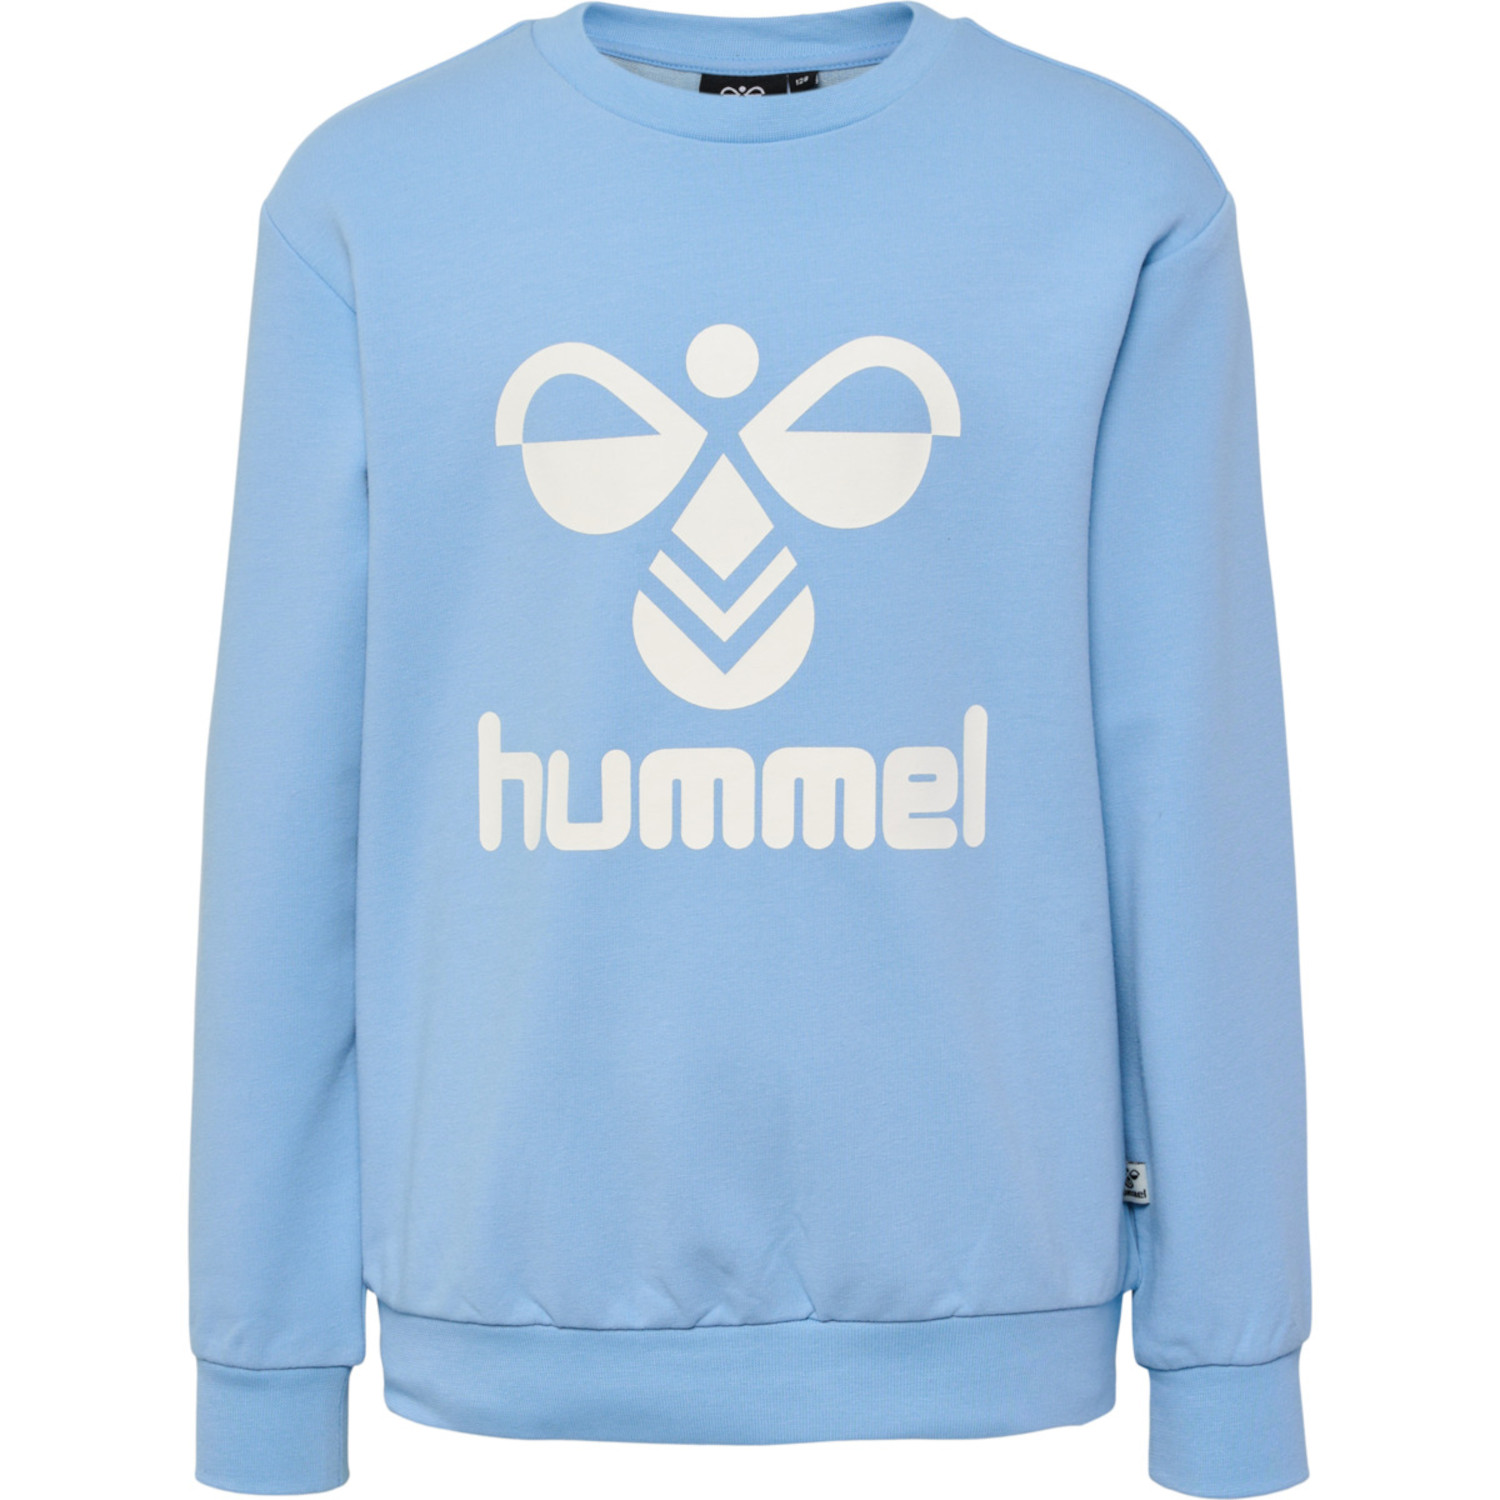 Hummel Kinder Sweatshirt Dos 213852 | eBay